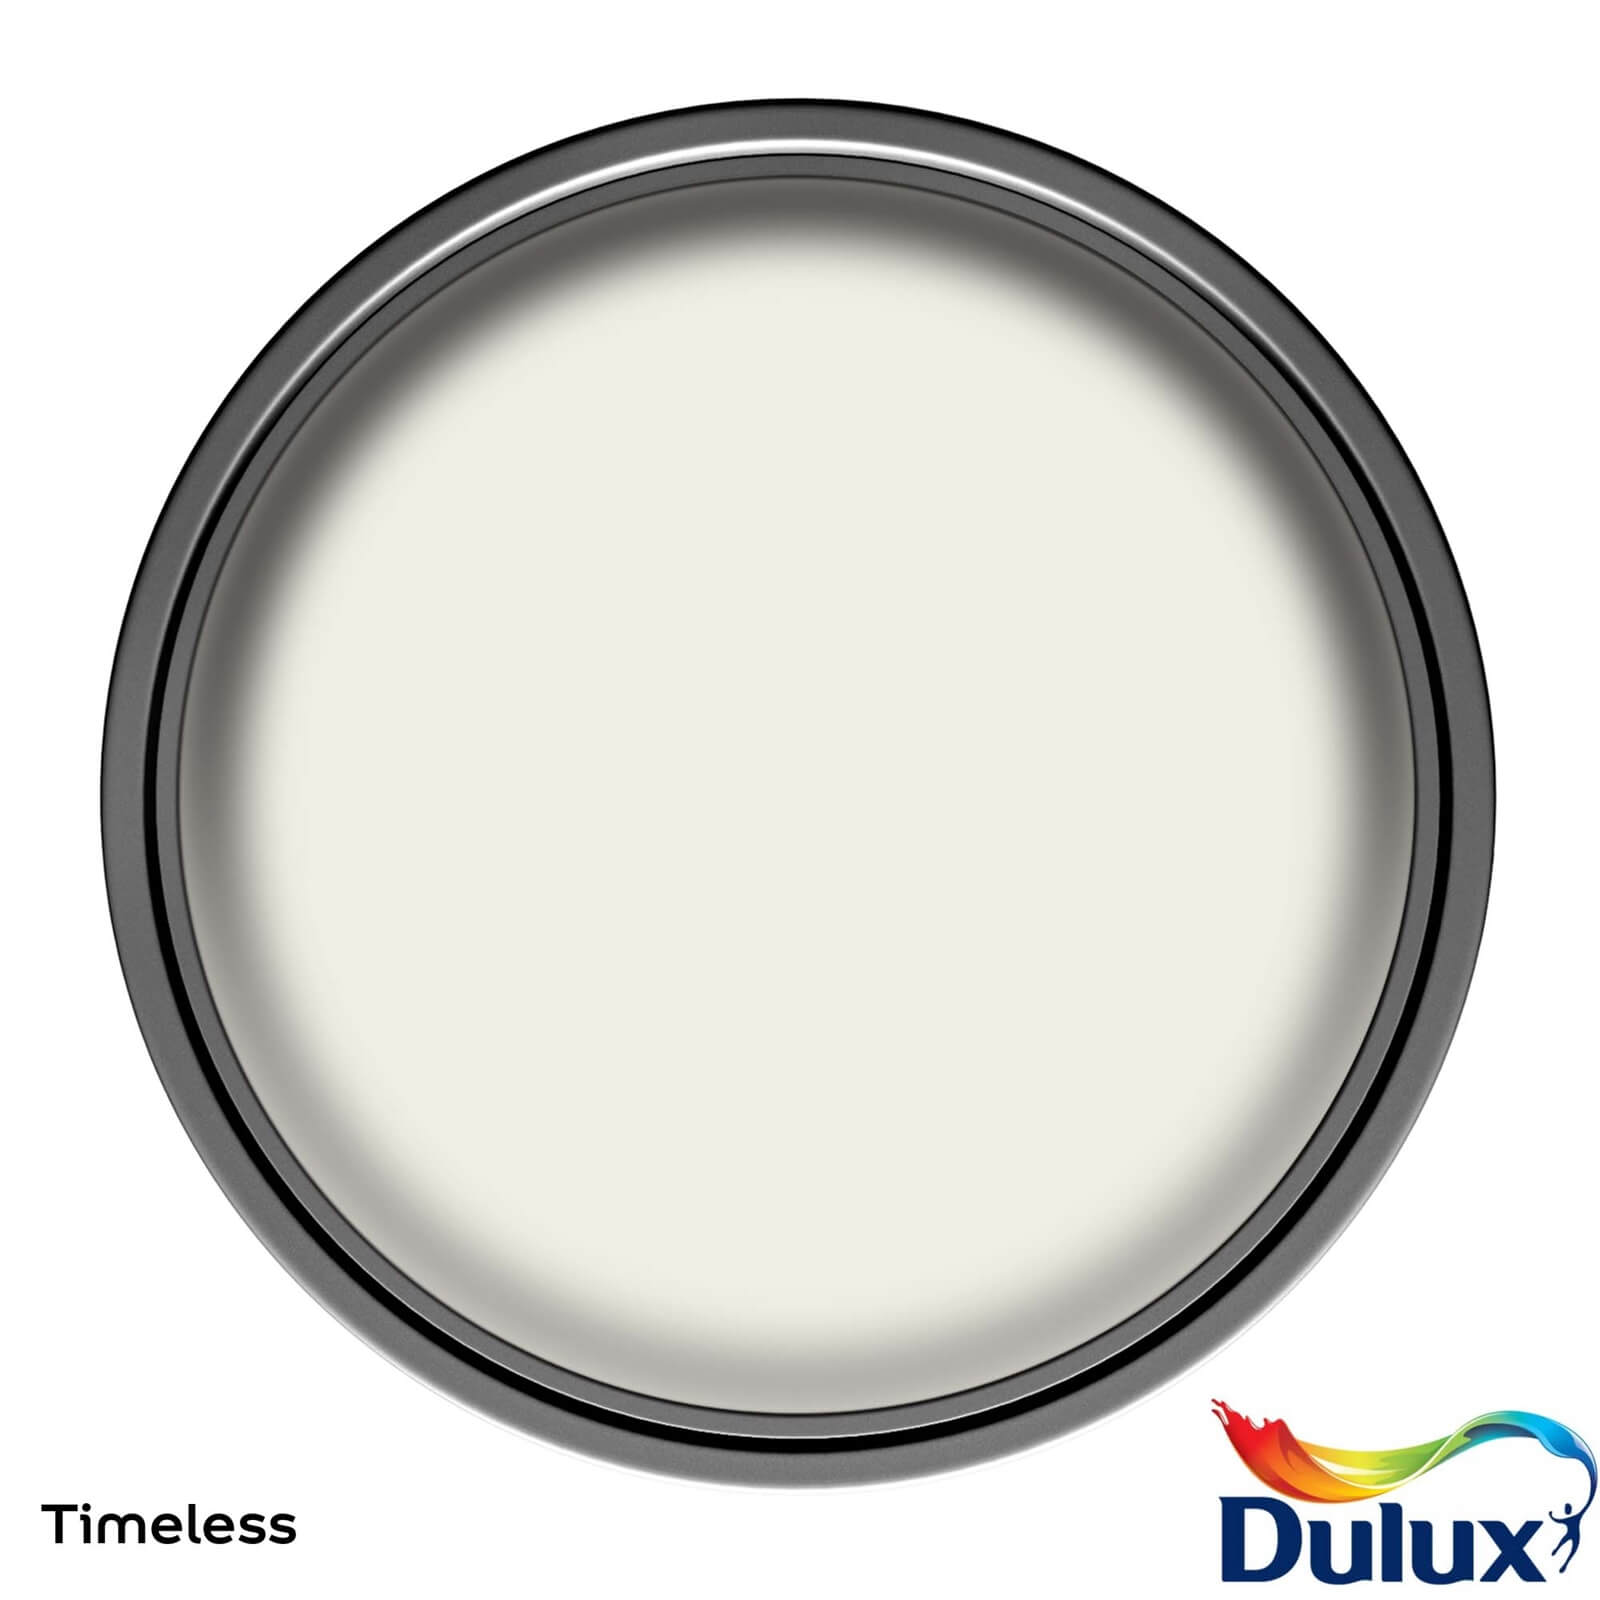 Dulux Paint Non Drip Gloss Paint Timeless - 750ml